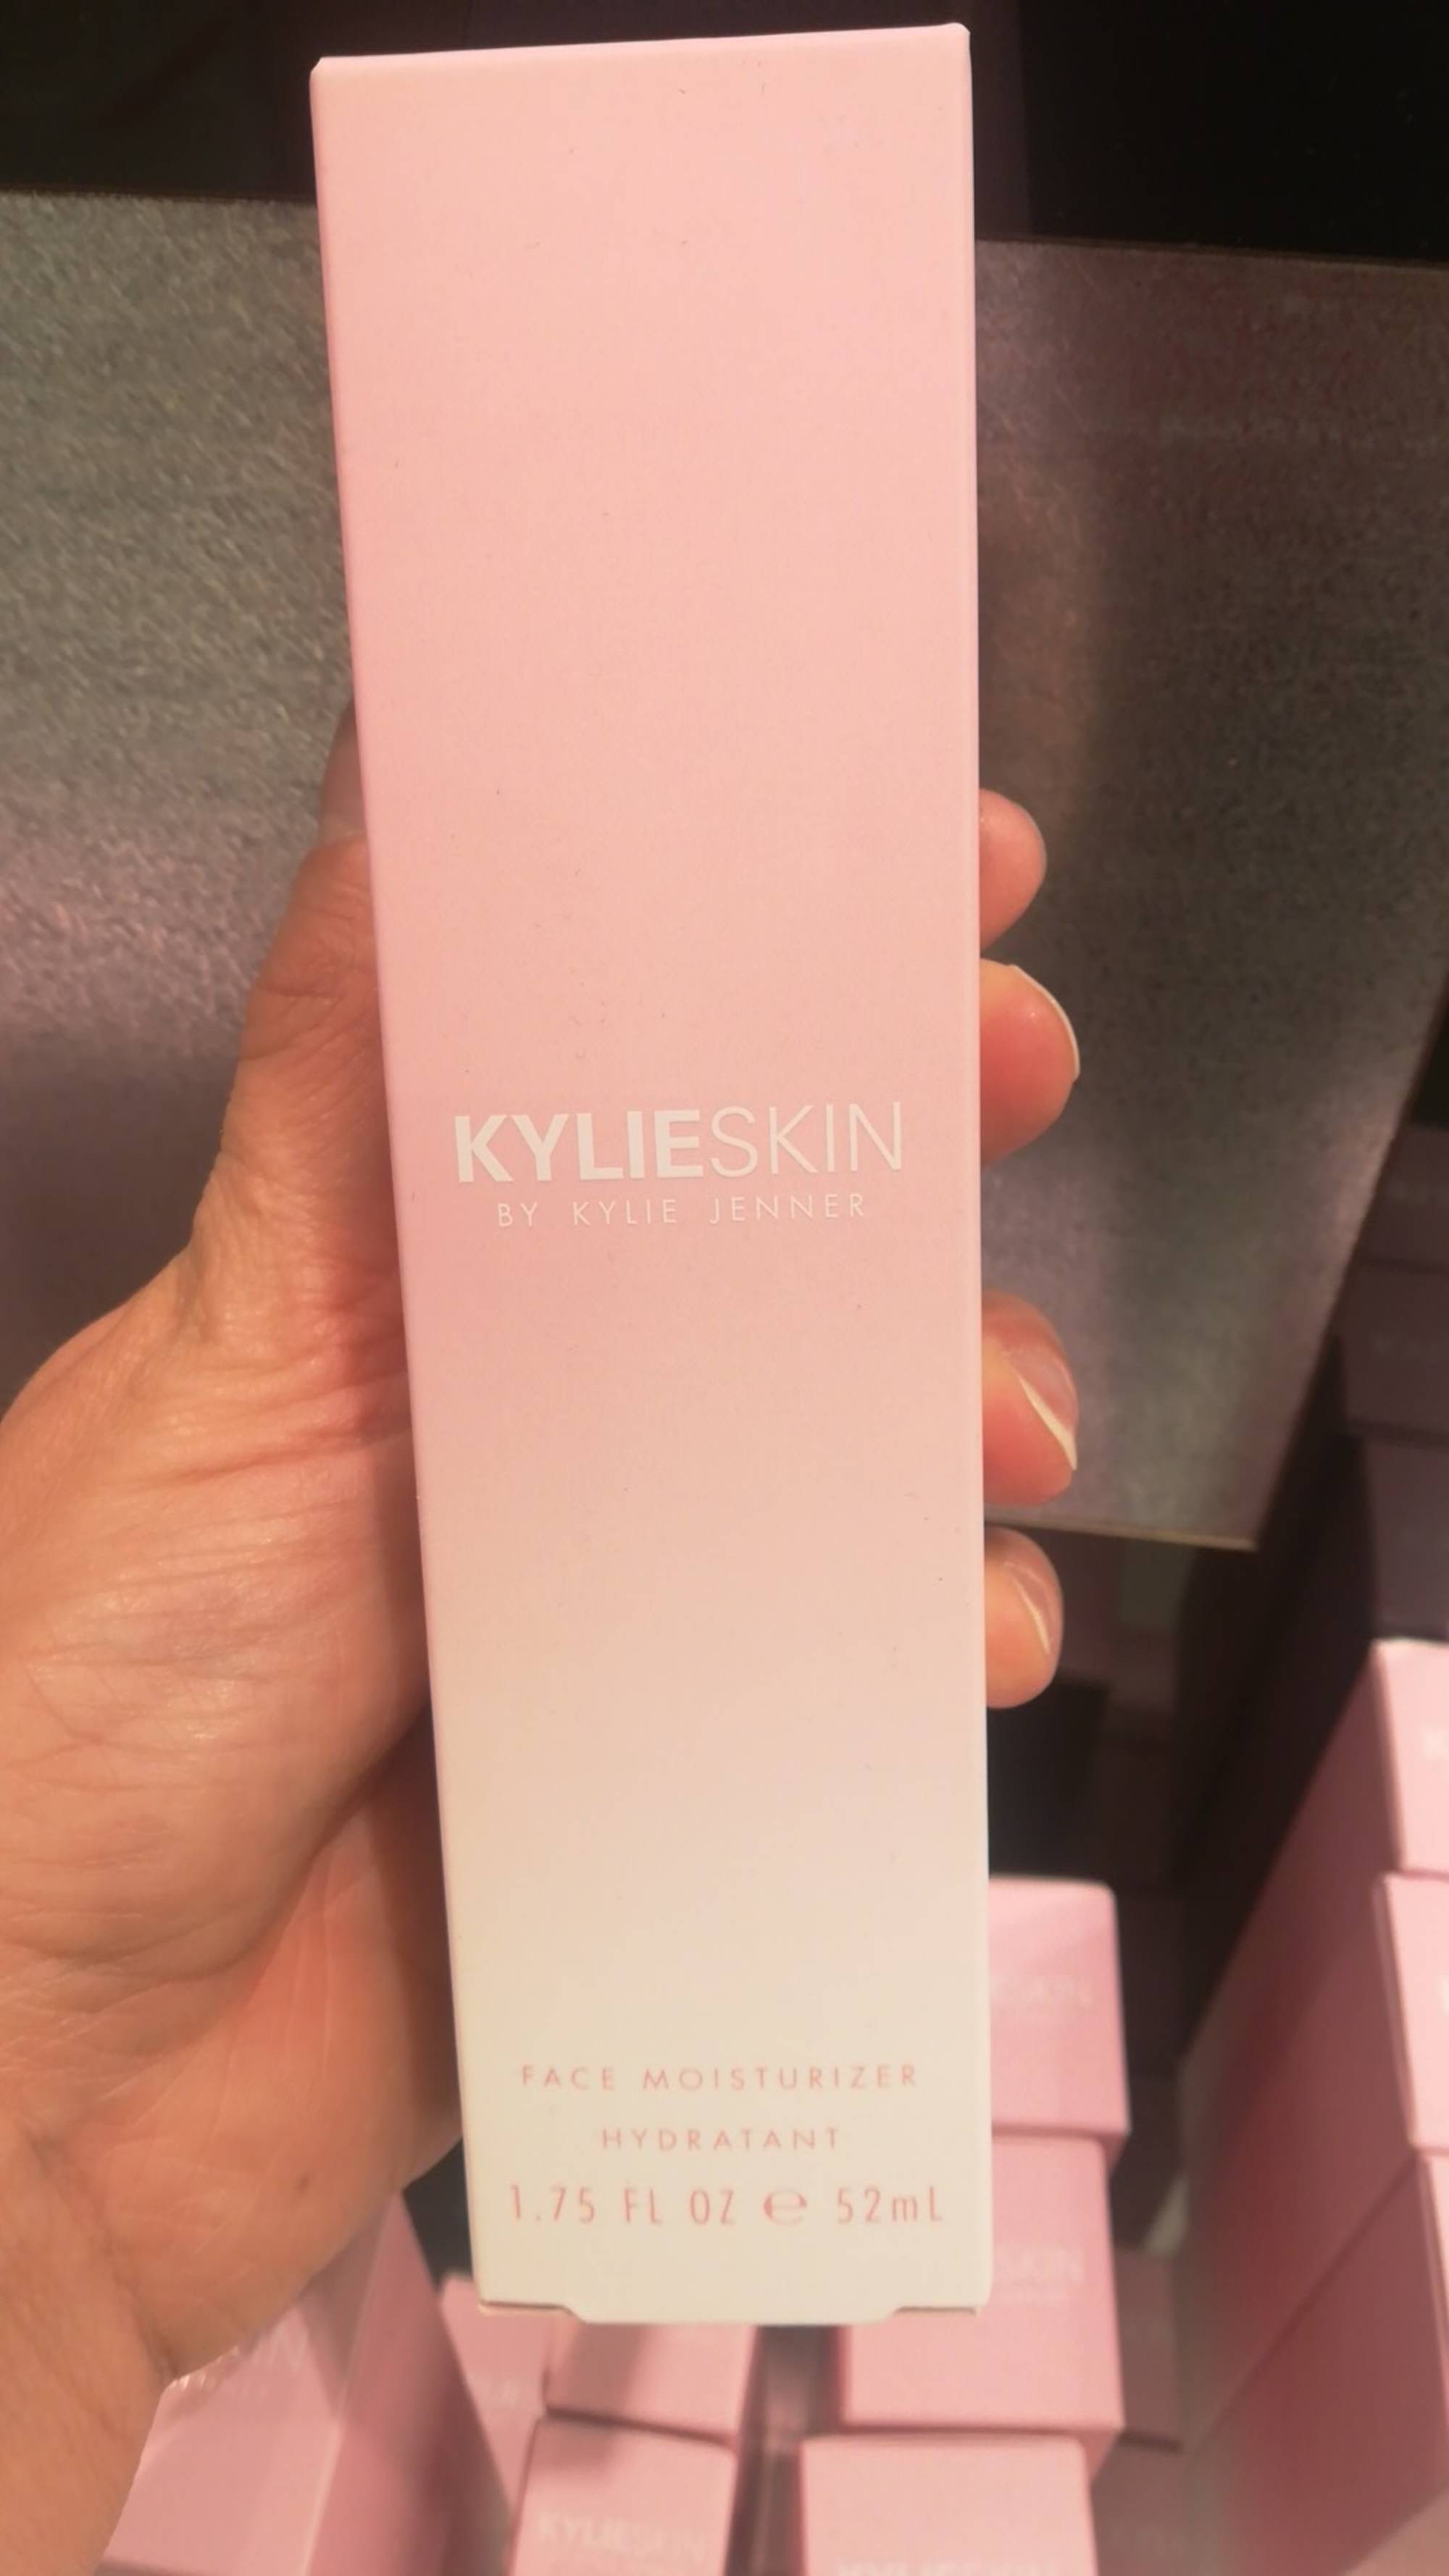 KYLIE JENNER - Kylie skin - Face moisturizer hydratant